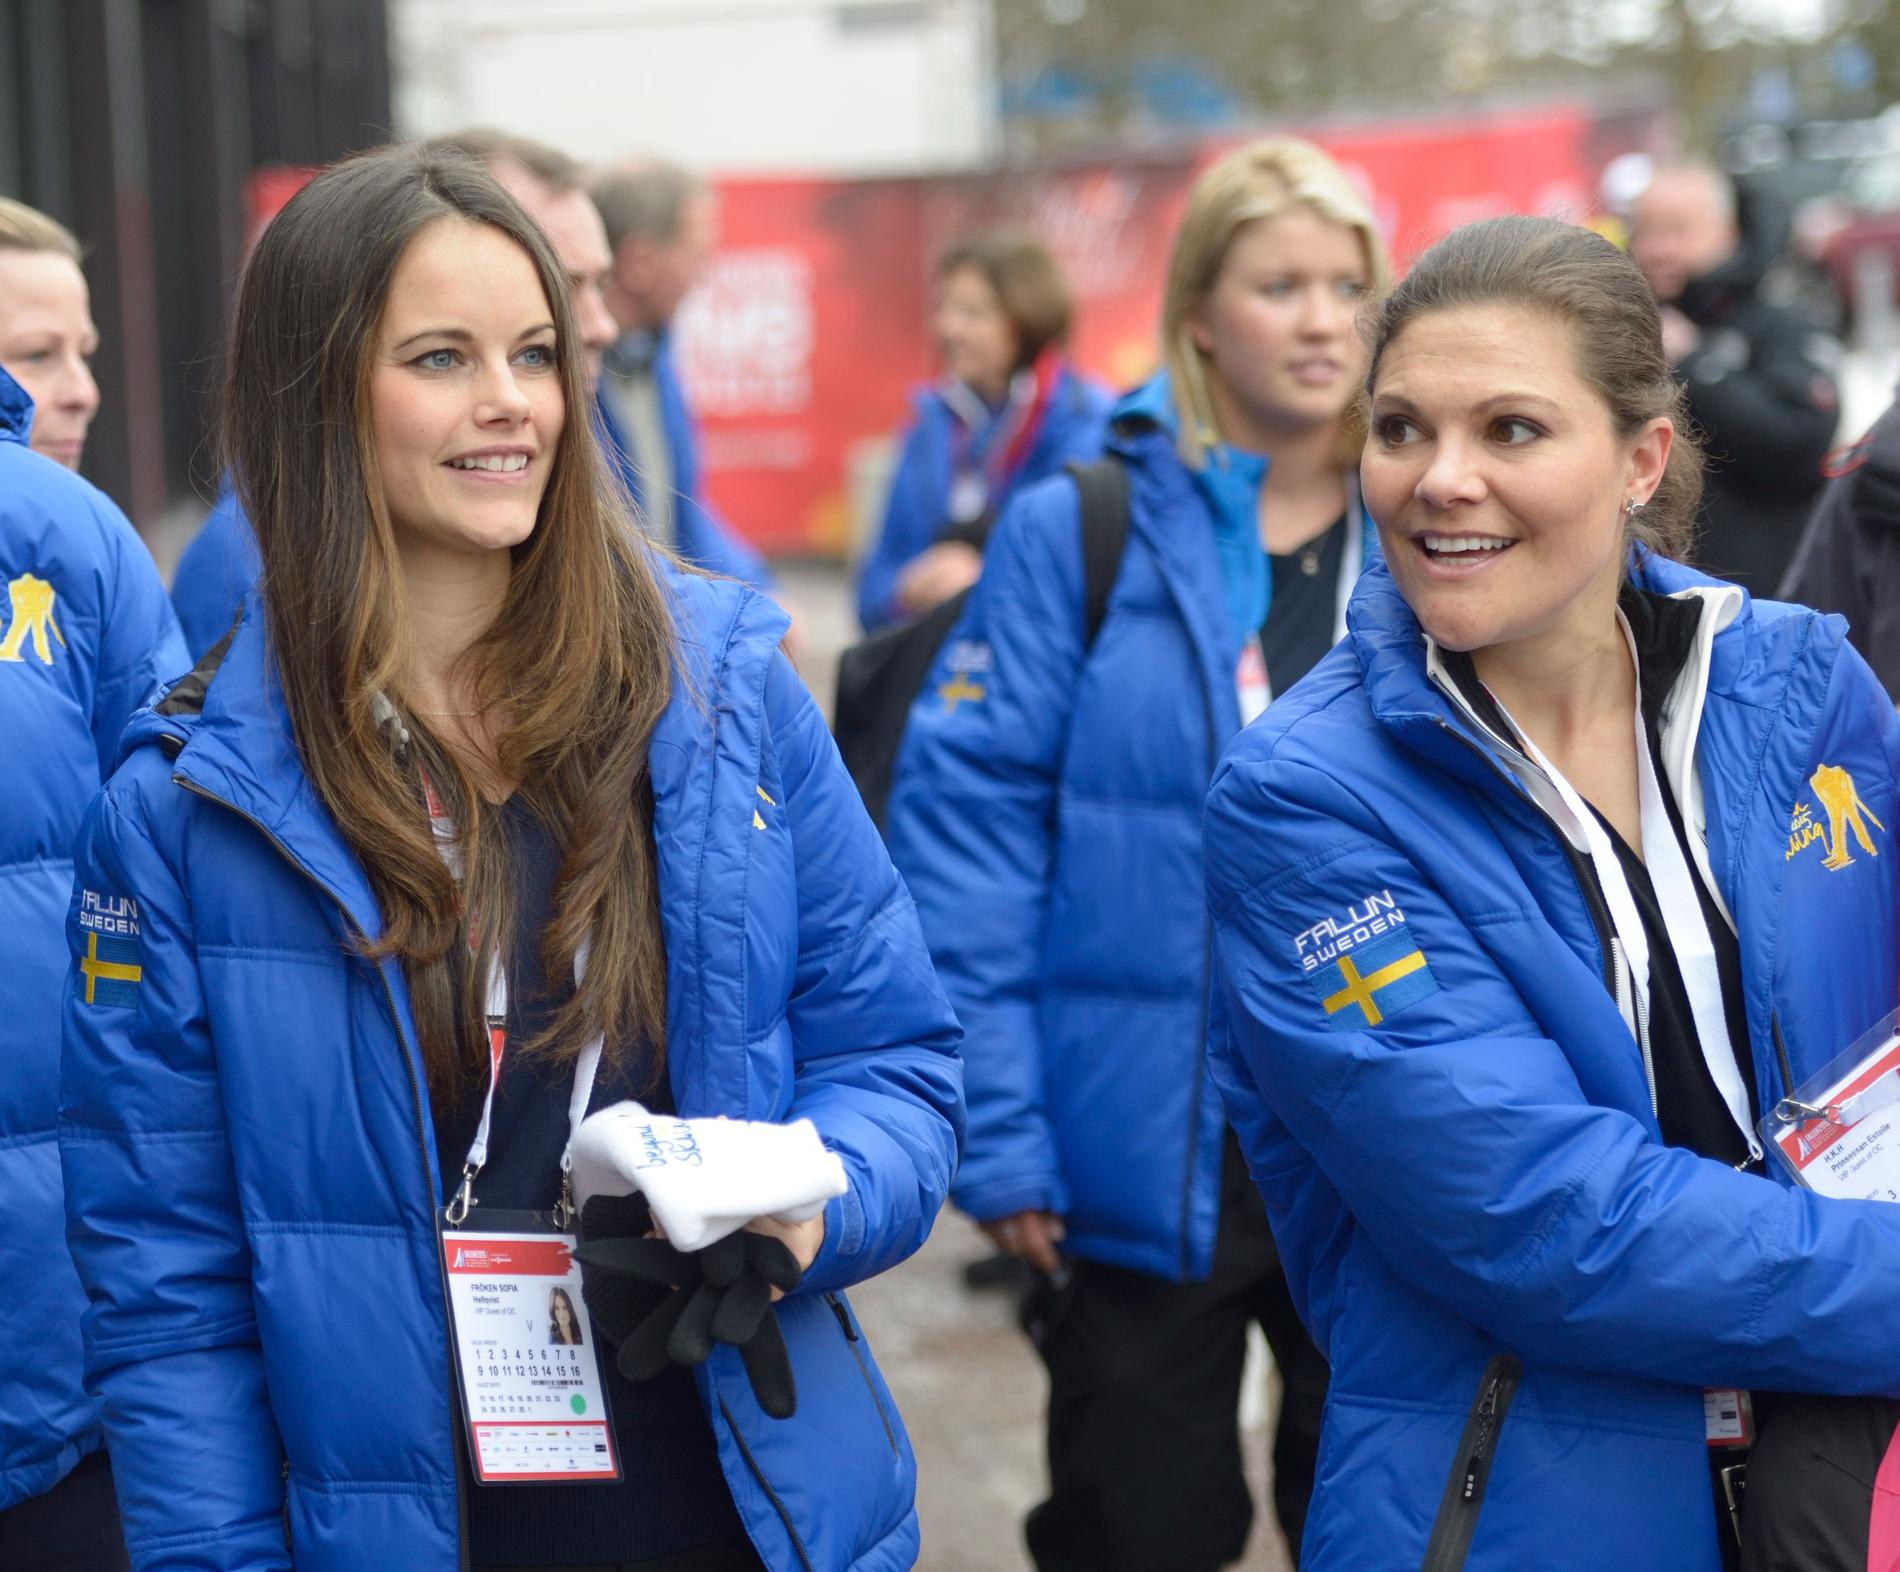 Idrottsintresset har de gemensamt. Under skid-VM i Falun 2015 var Victoria och Sofia självklart på plats.